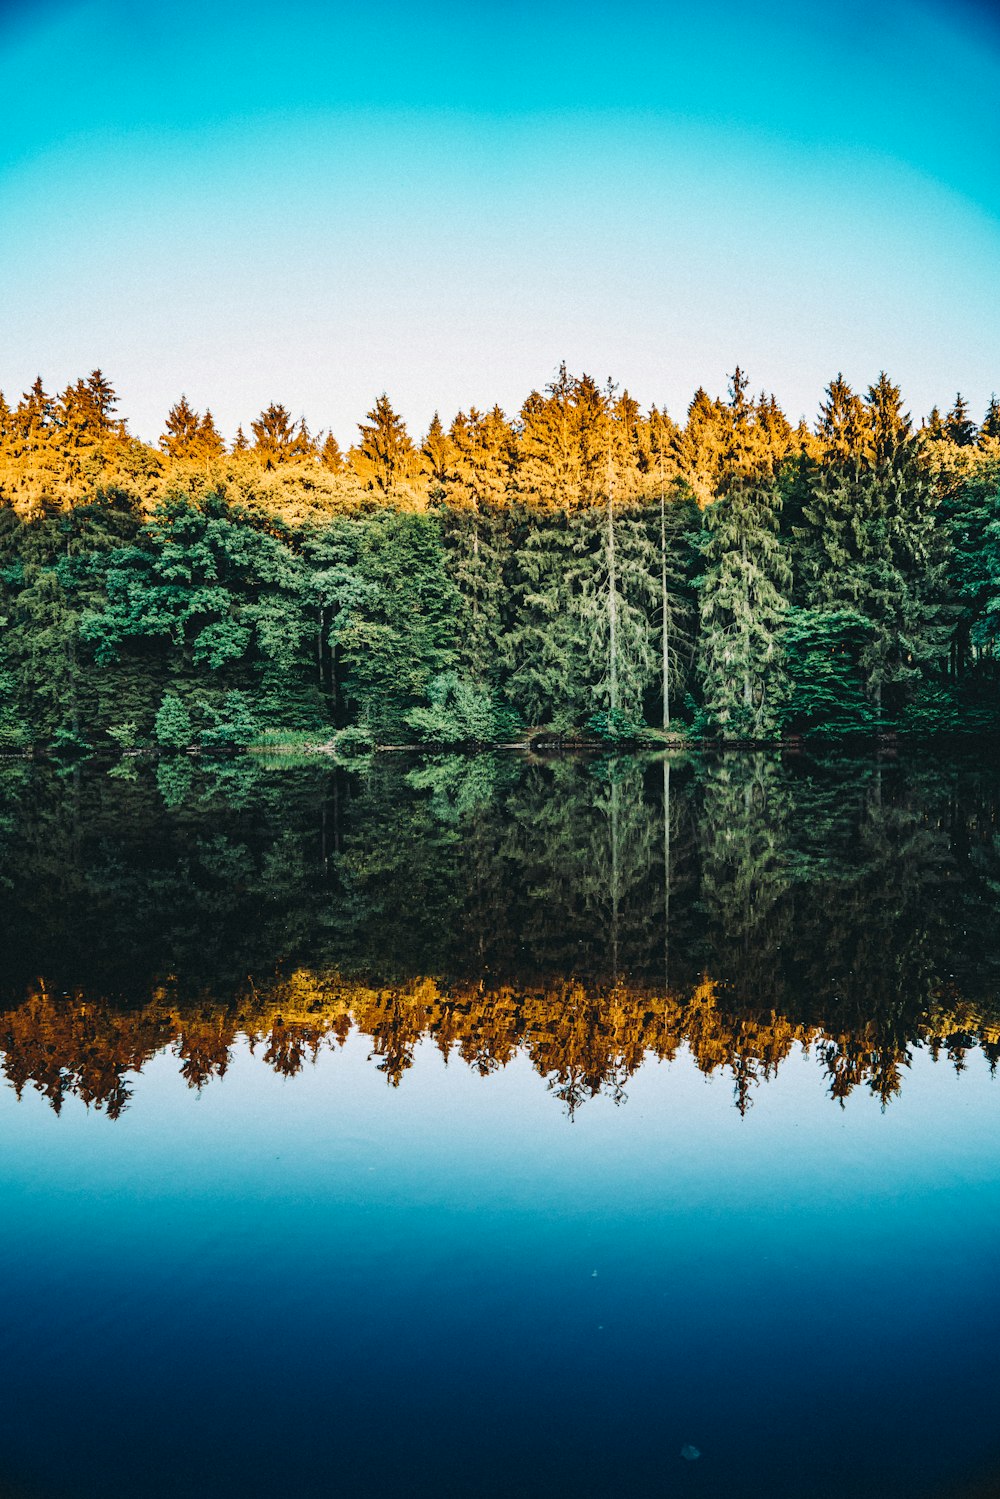 Fotografía de árboles que se reflejan en el cuerpo de agua bajo el cielo azul claro